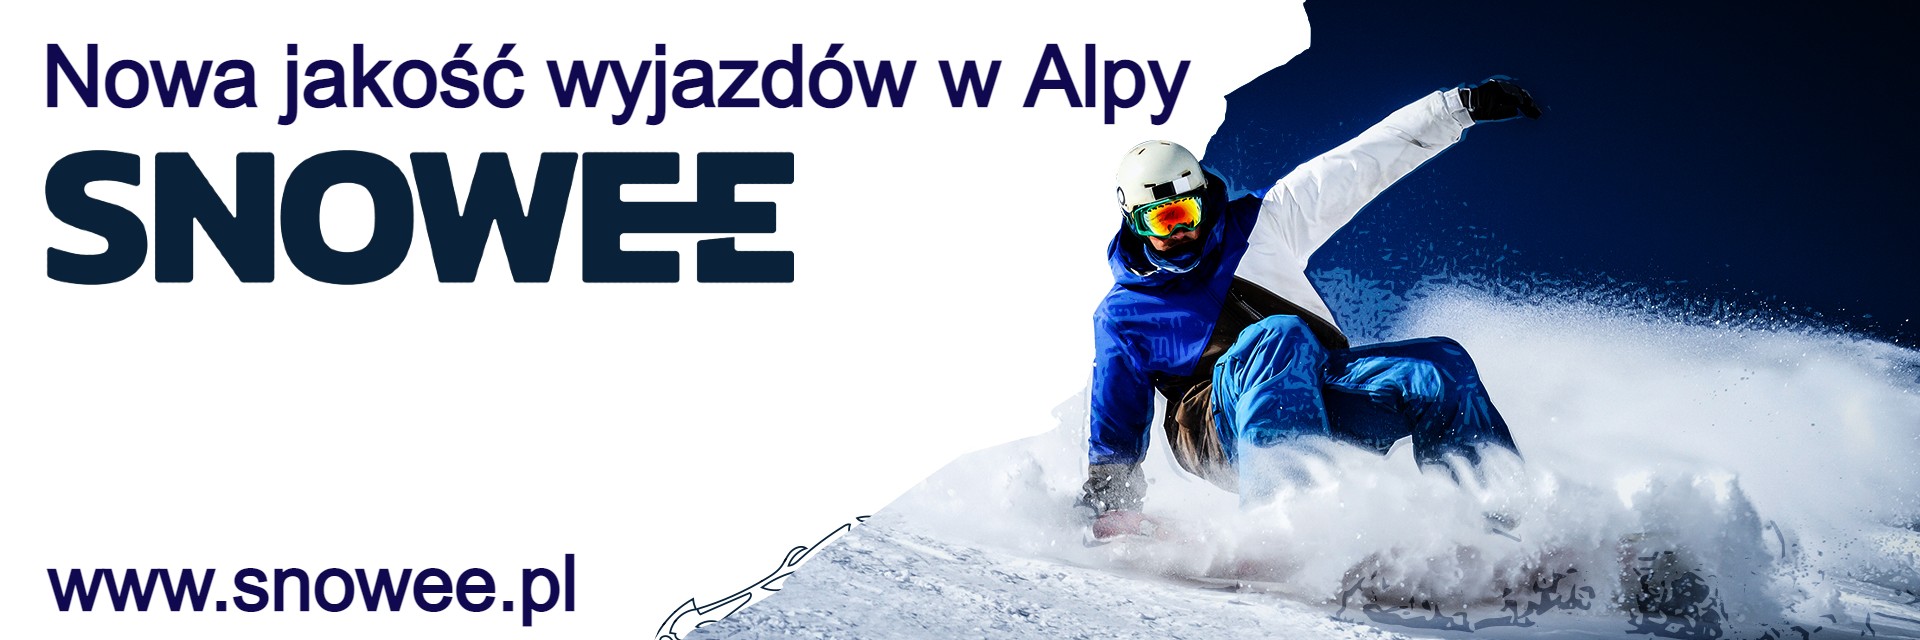 Wyjazdy | Snowboard.pl